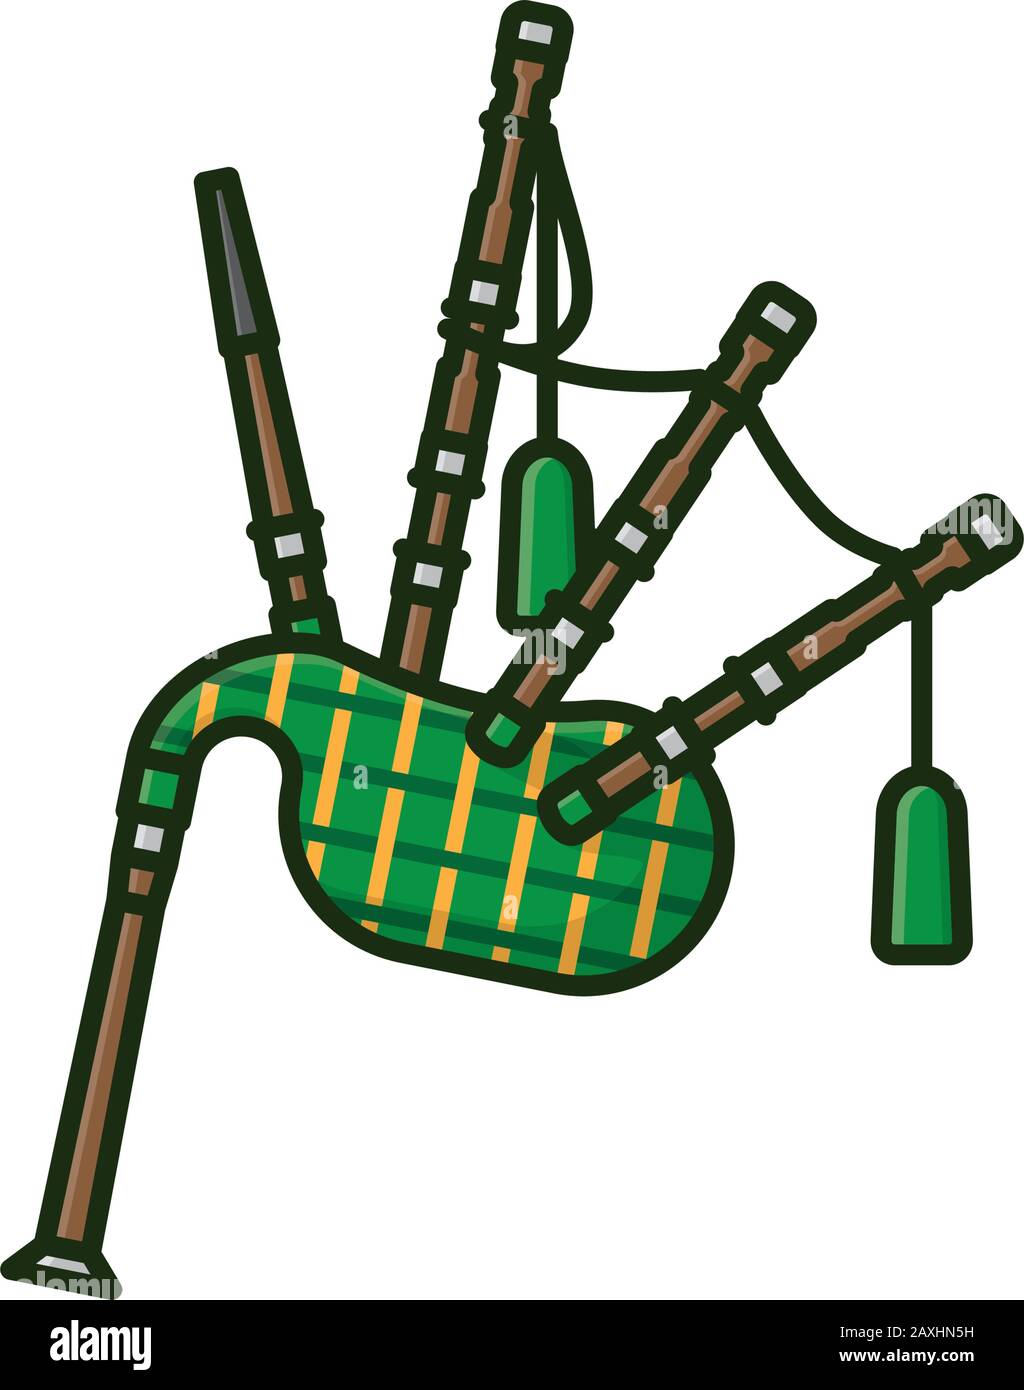 Isolierte Vektorgrafiken in schottischem Dudelsack für Bagpipe Day am 10. März. Farbsymbol für traditionelle Musikinstrumente. Stock Vektor